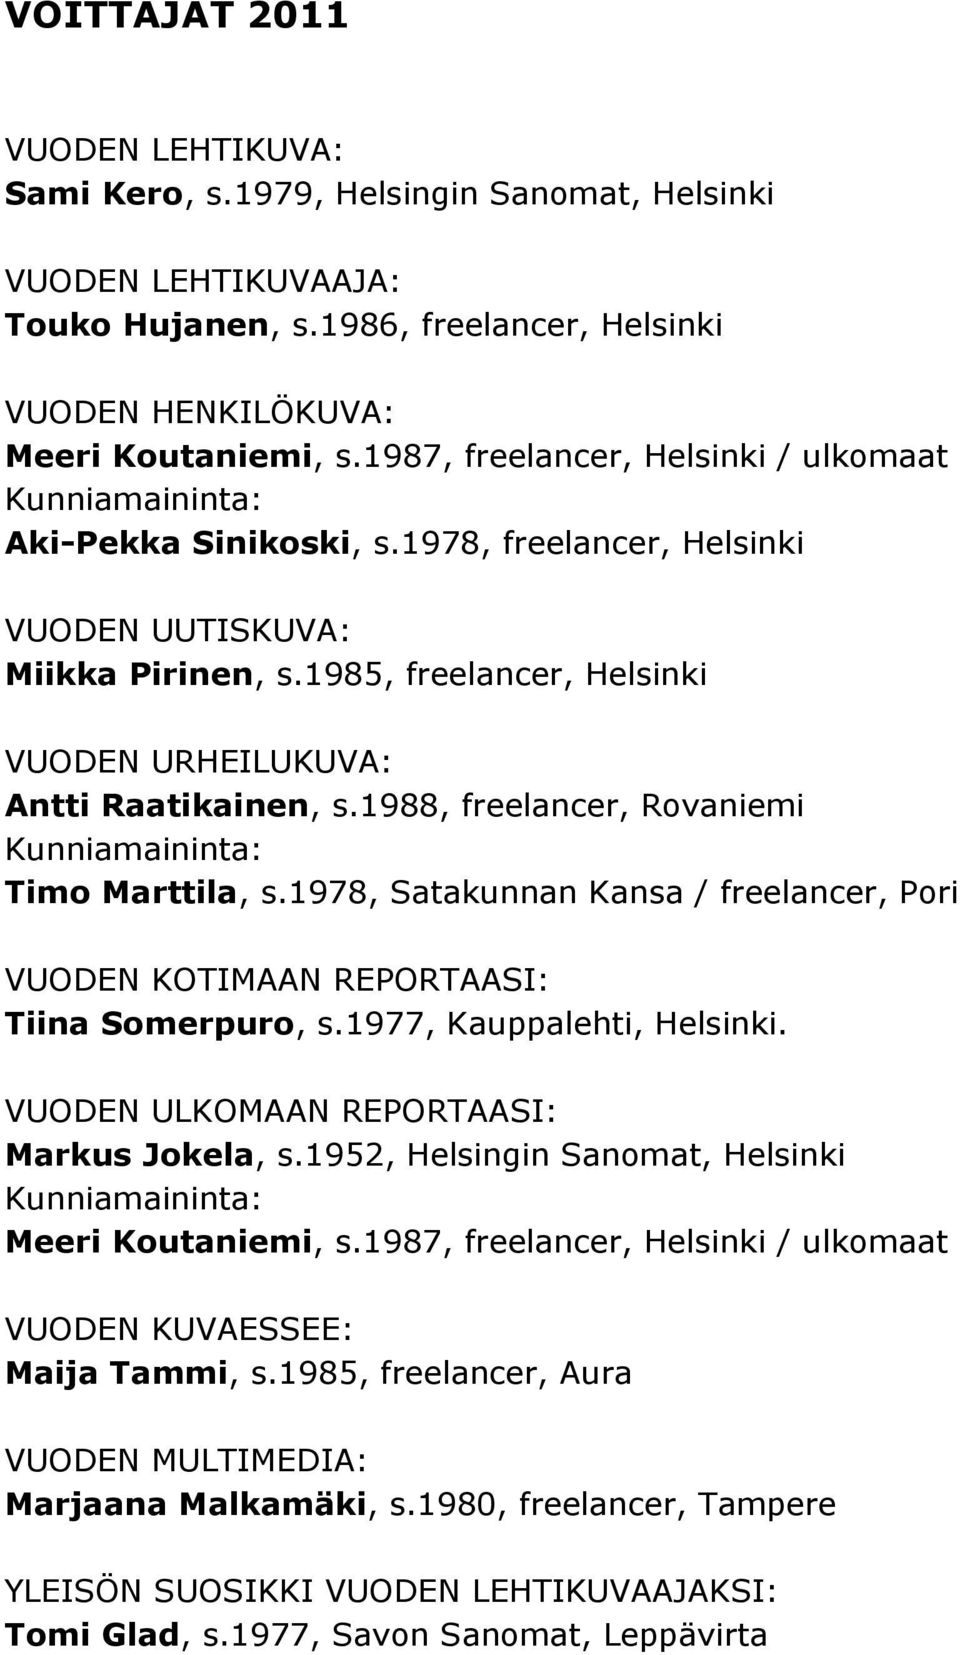 1985, freelancer, Helsinki VUODEN URHEILUKUVA: Antti Raatikainen, s.1988, freelancer, Rovaniemi Kunniamaininta: Timo Marttila, s.